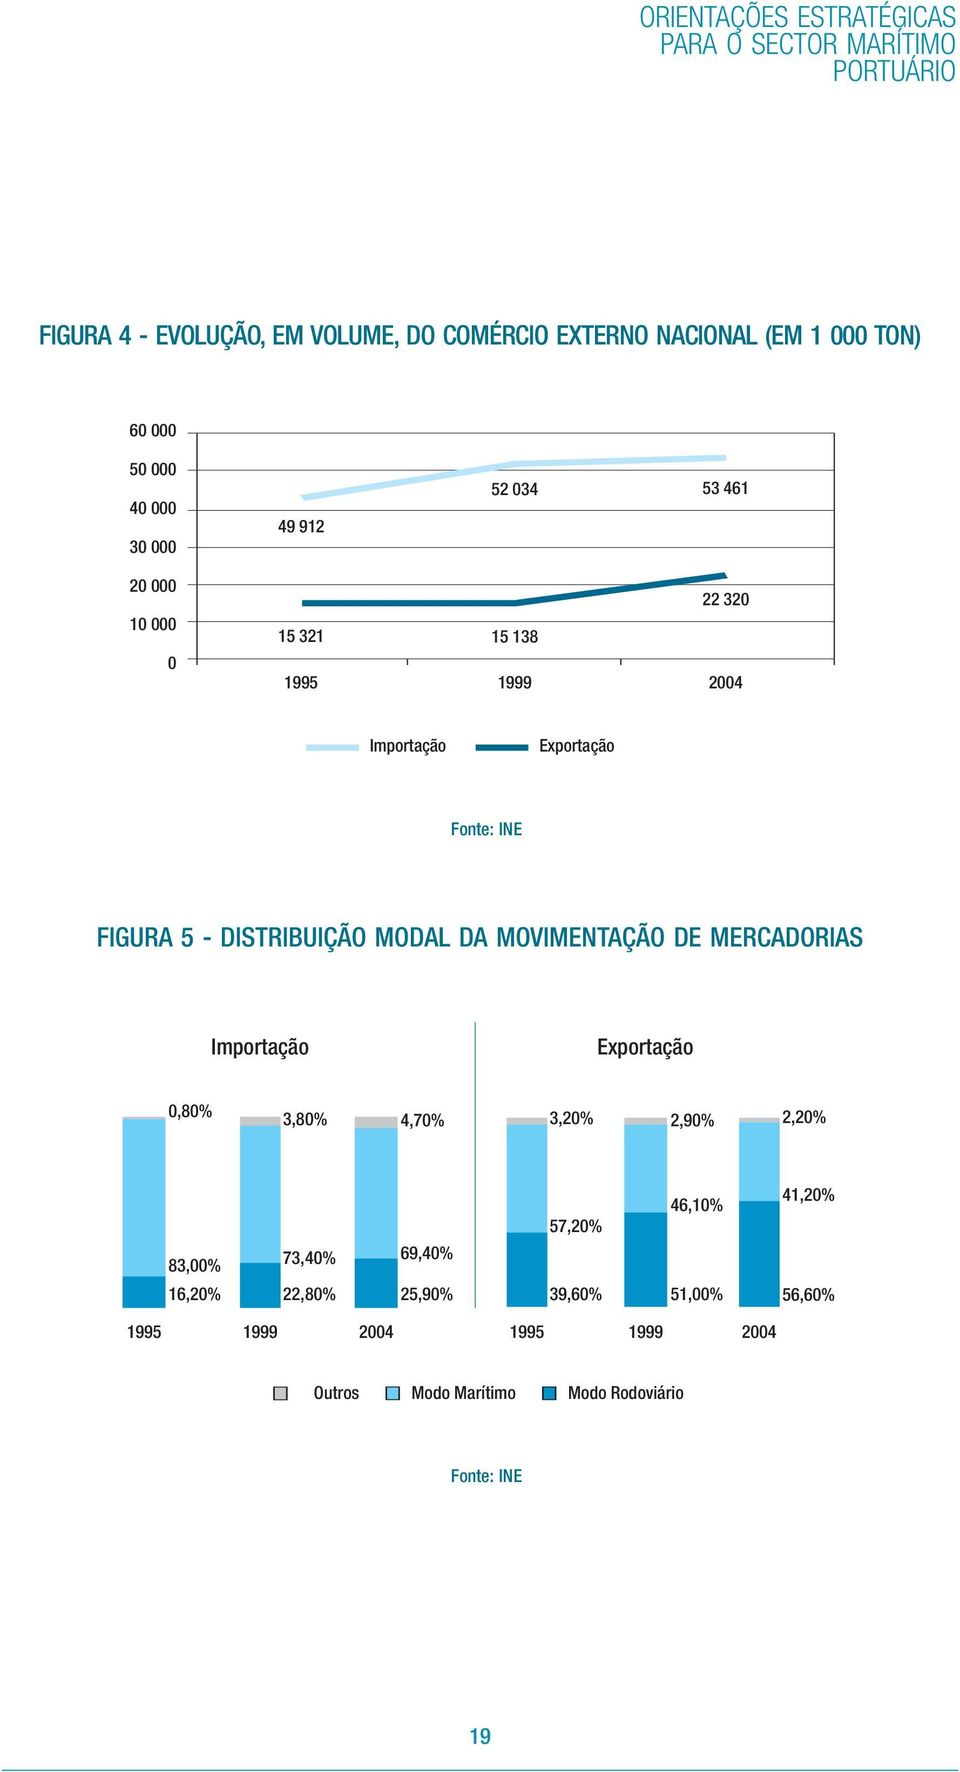 5 - DISTRIBUIÇÃO MODAL DA MOVIMENTAÇÃO DE MERCADORIAS Importação Exportação 0,80% 3,80% 4,70% 3,20% 2,90% 2,20% 83,00% 16,20% 73,40%